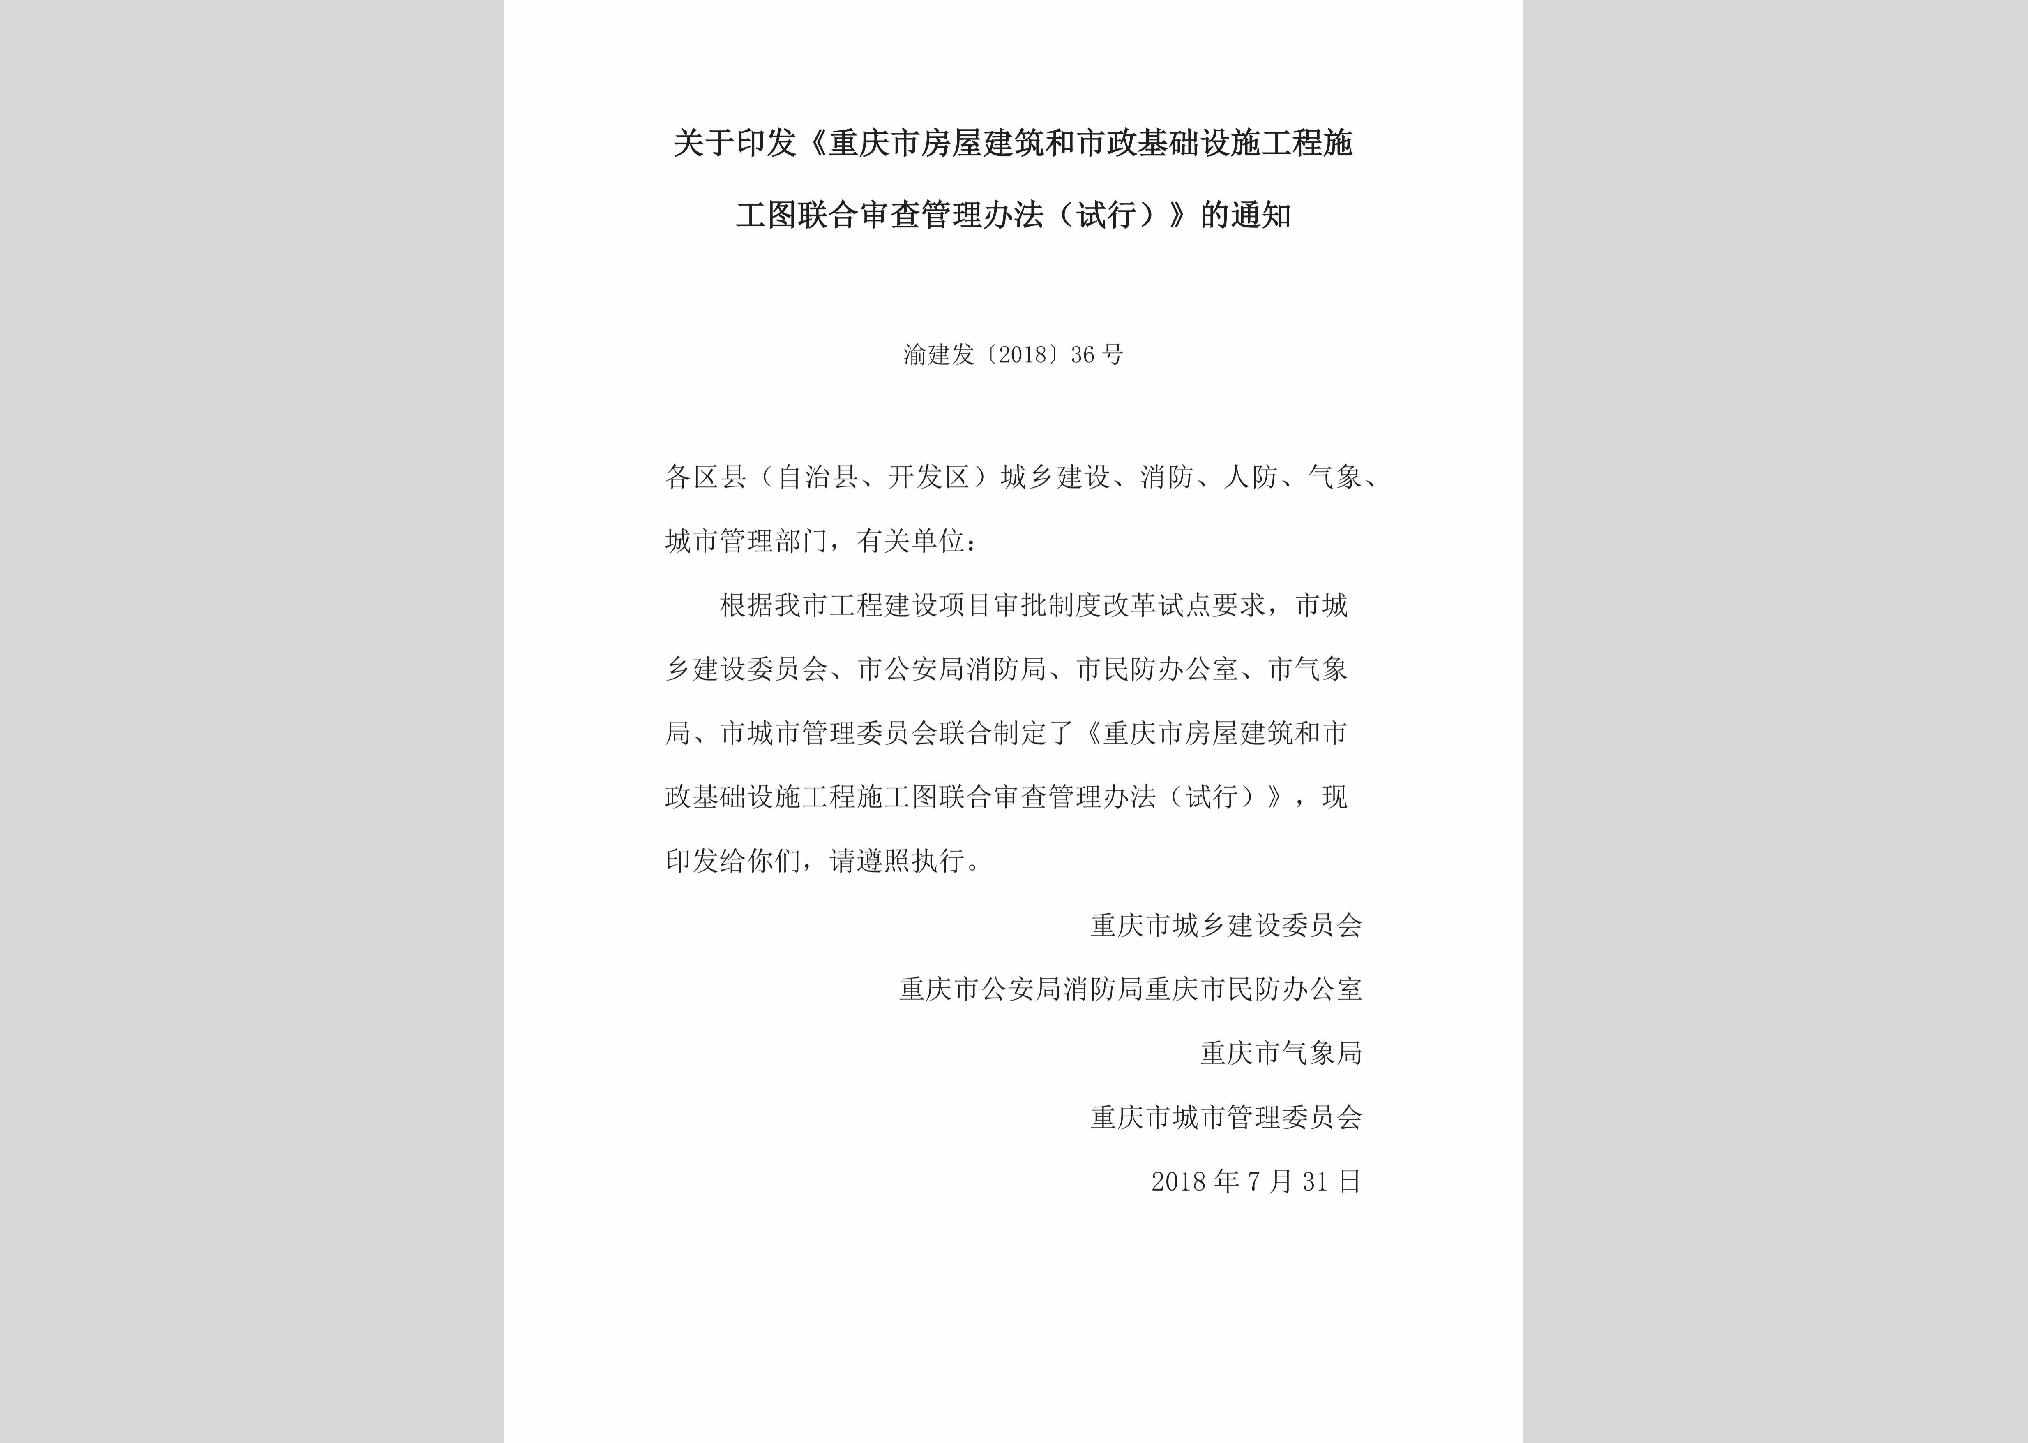 渝建发[2018]36号：关于印发《重庆市房屋建筑和市政基础设施工程施工图联合审查管理办法（试行）》的通知